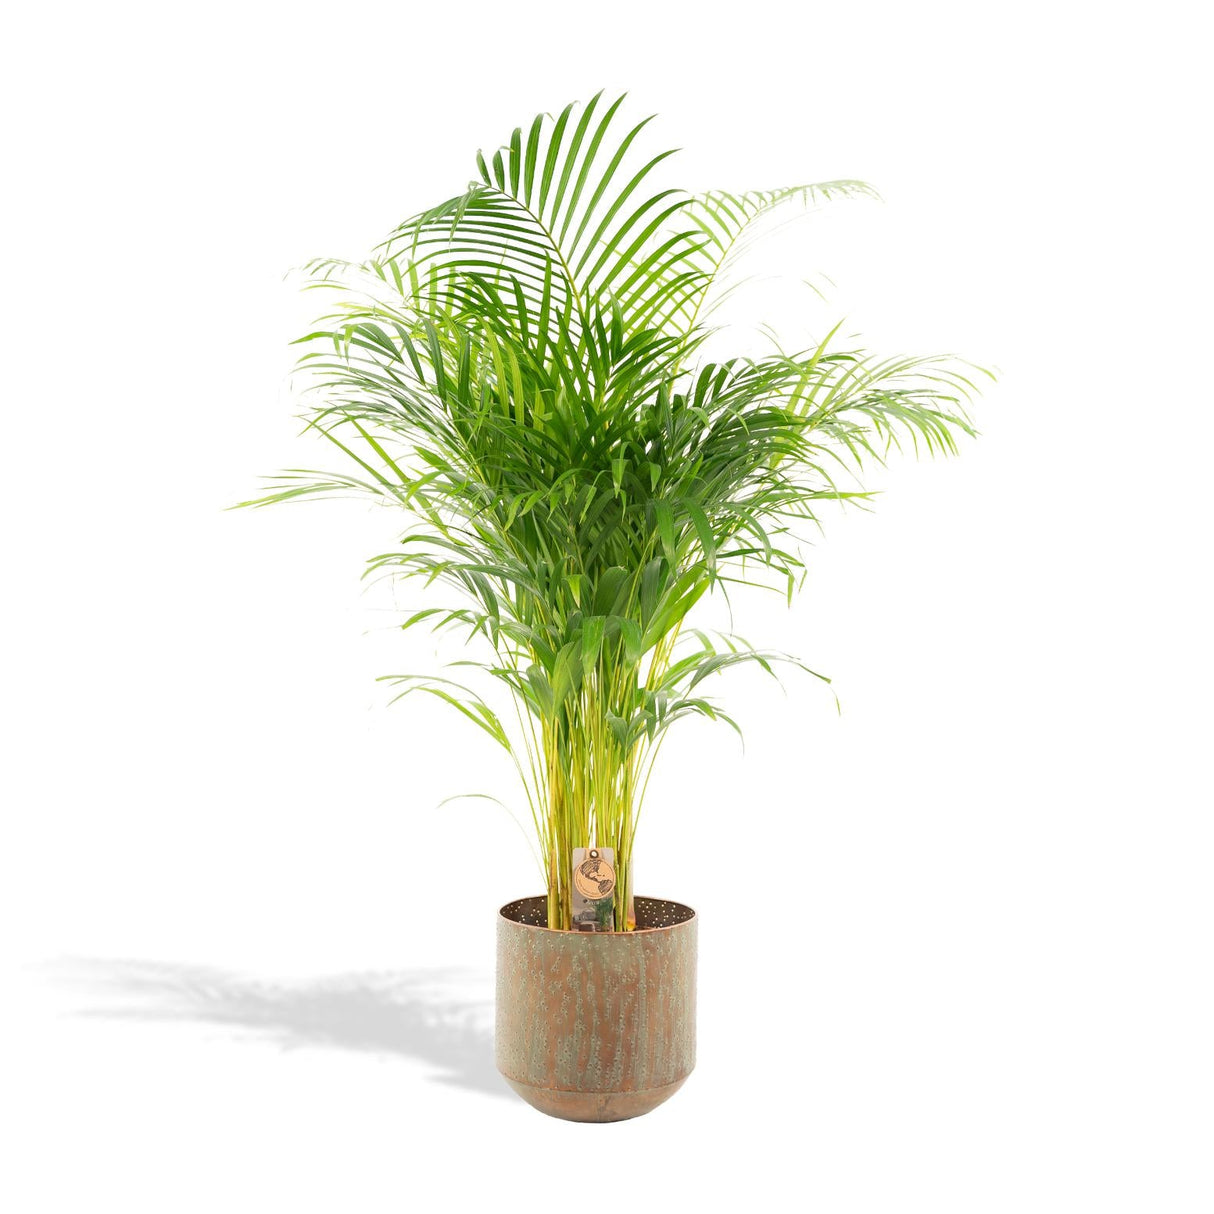 Comment réussir votre palmier d'intérieur pour profiter de son exotisme